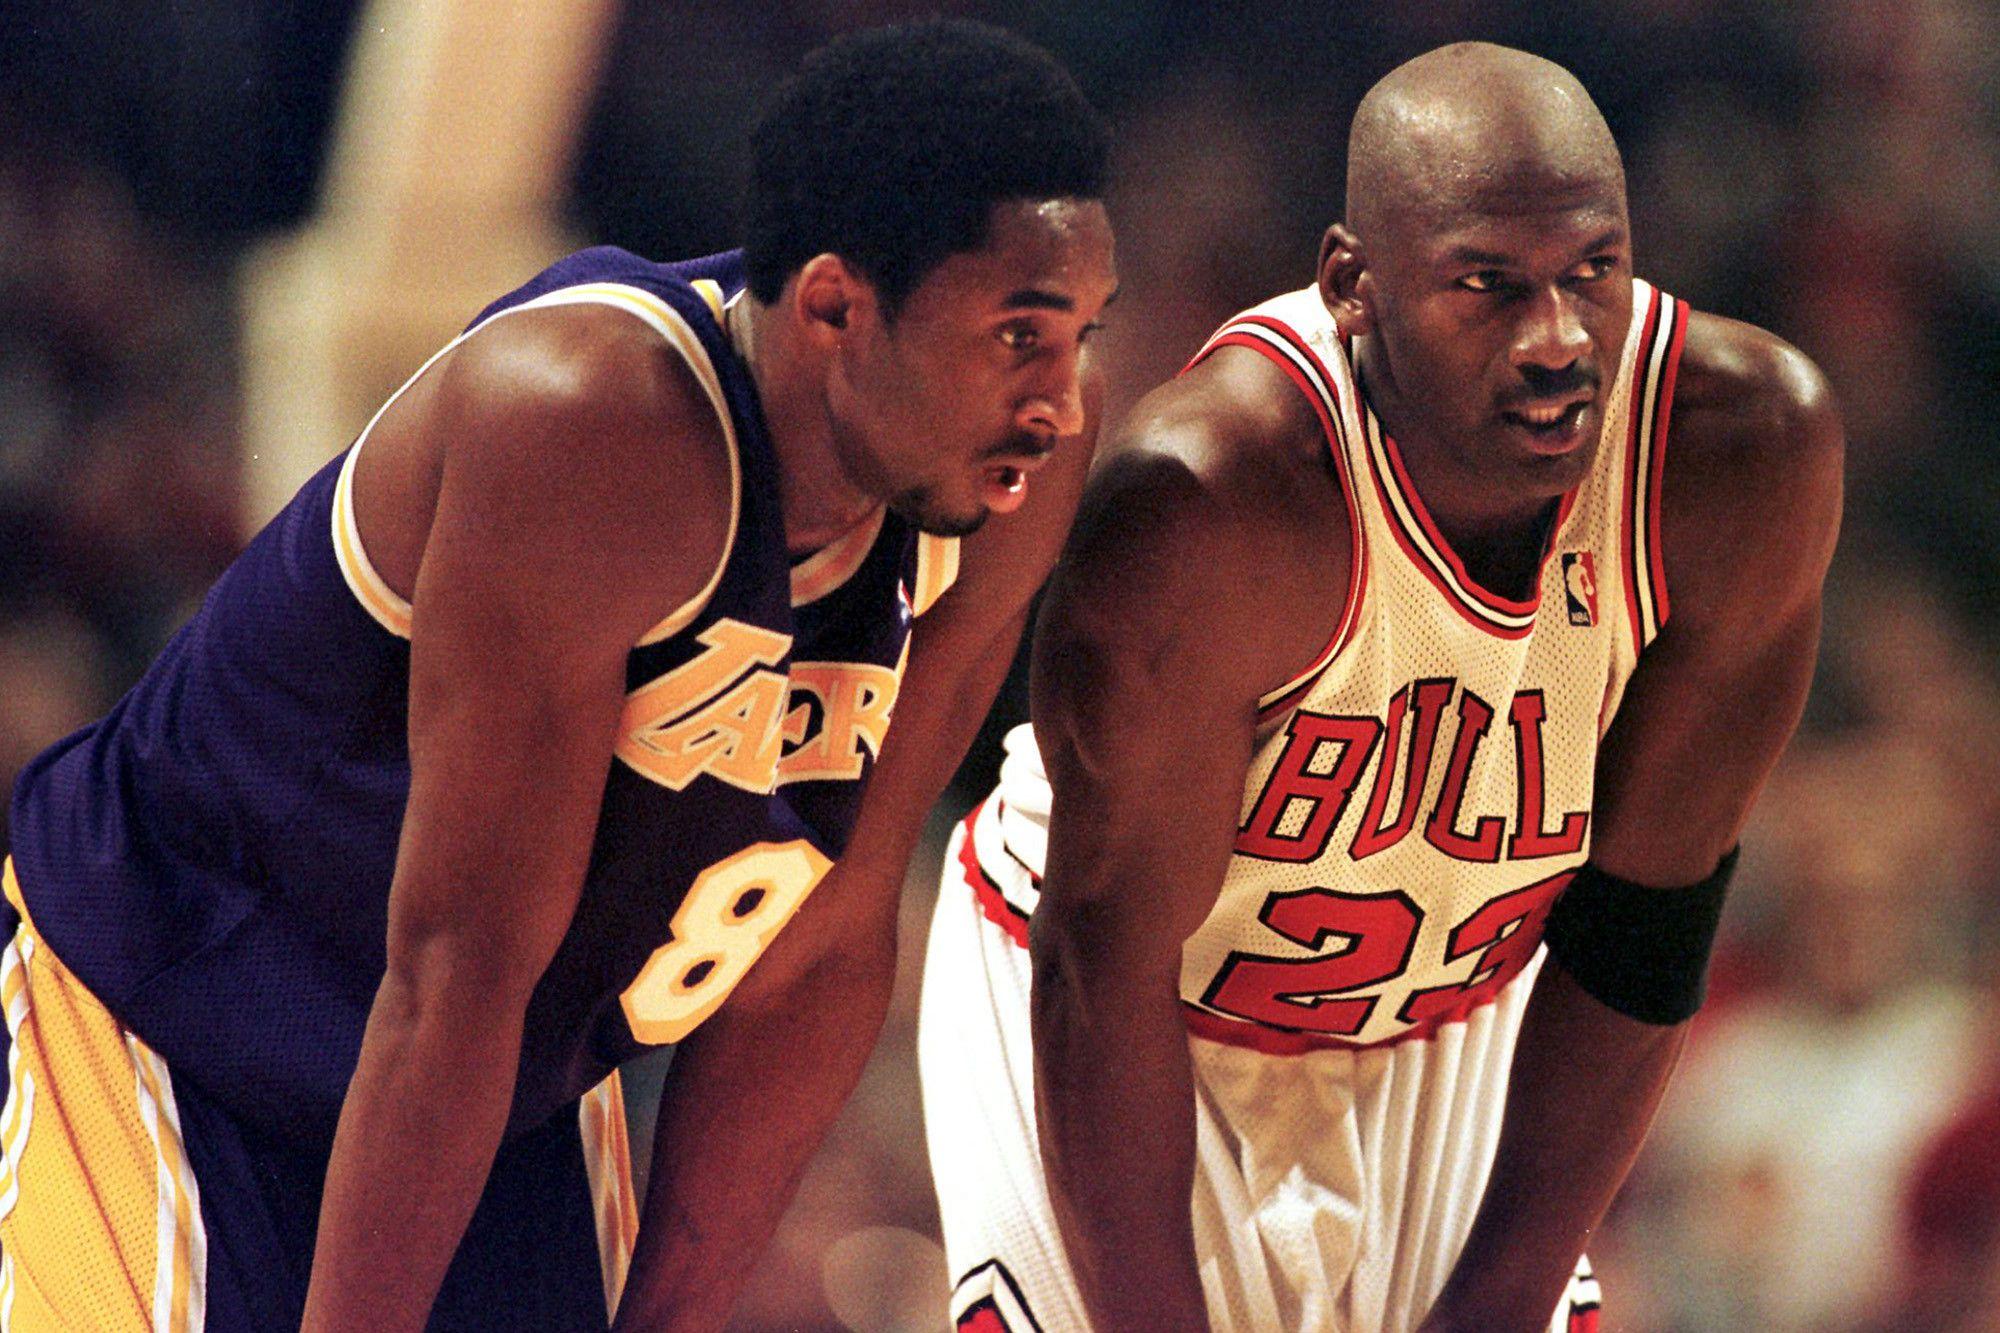 Kobe Bryant vs Michael Jordan Wallpaper by lisong24kobe on DeviantArt